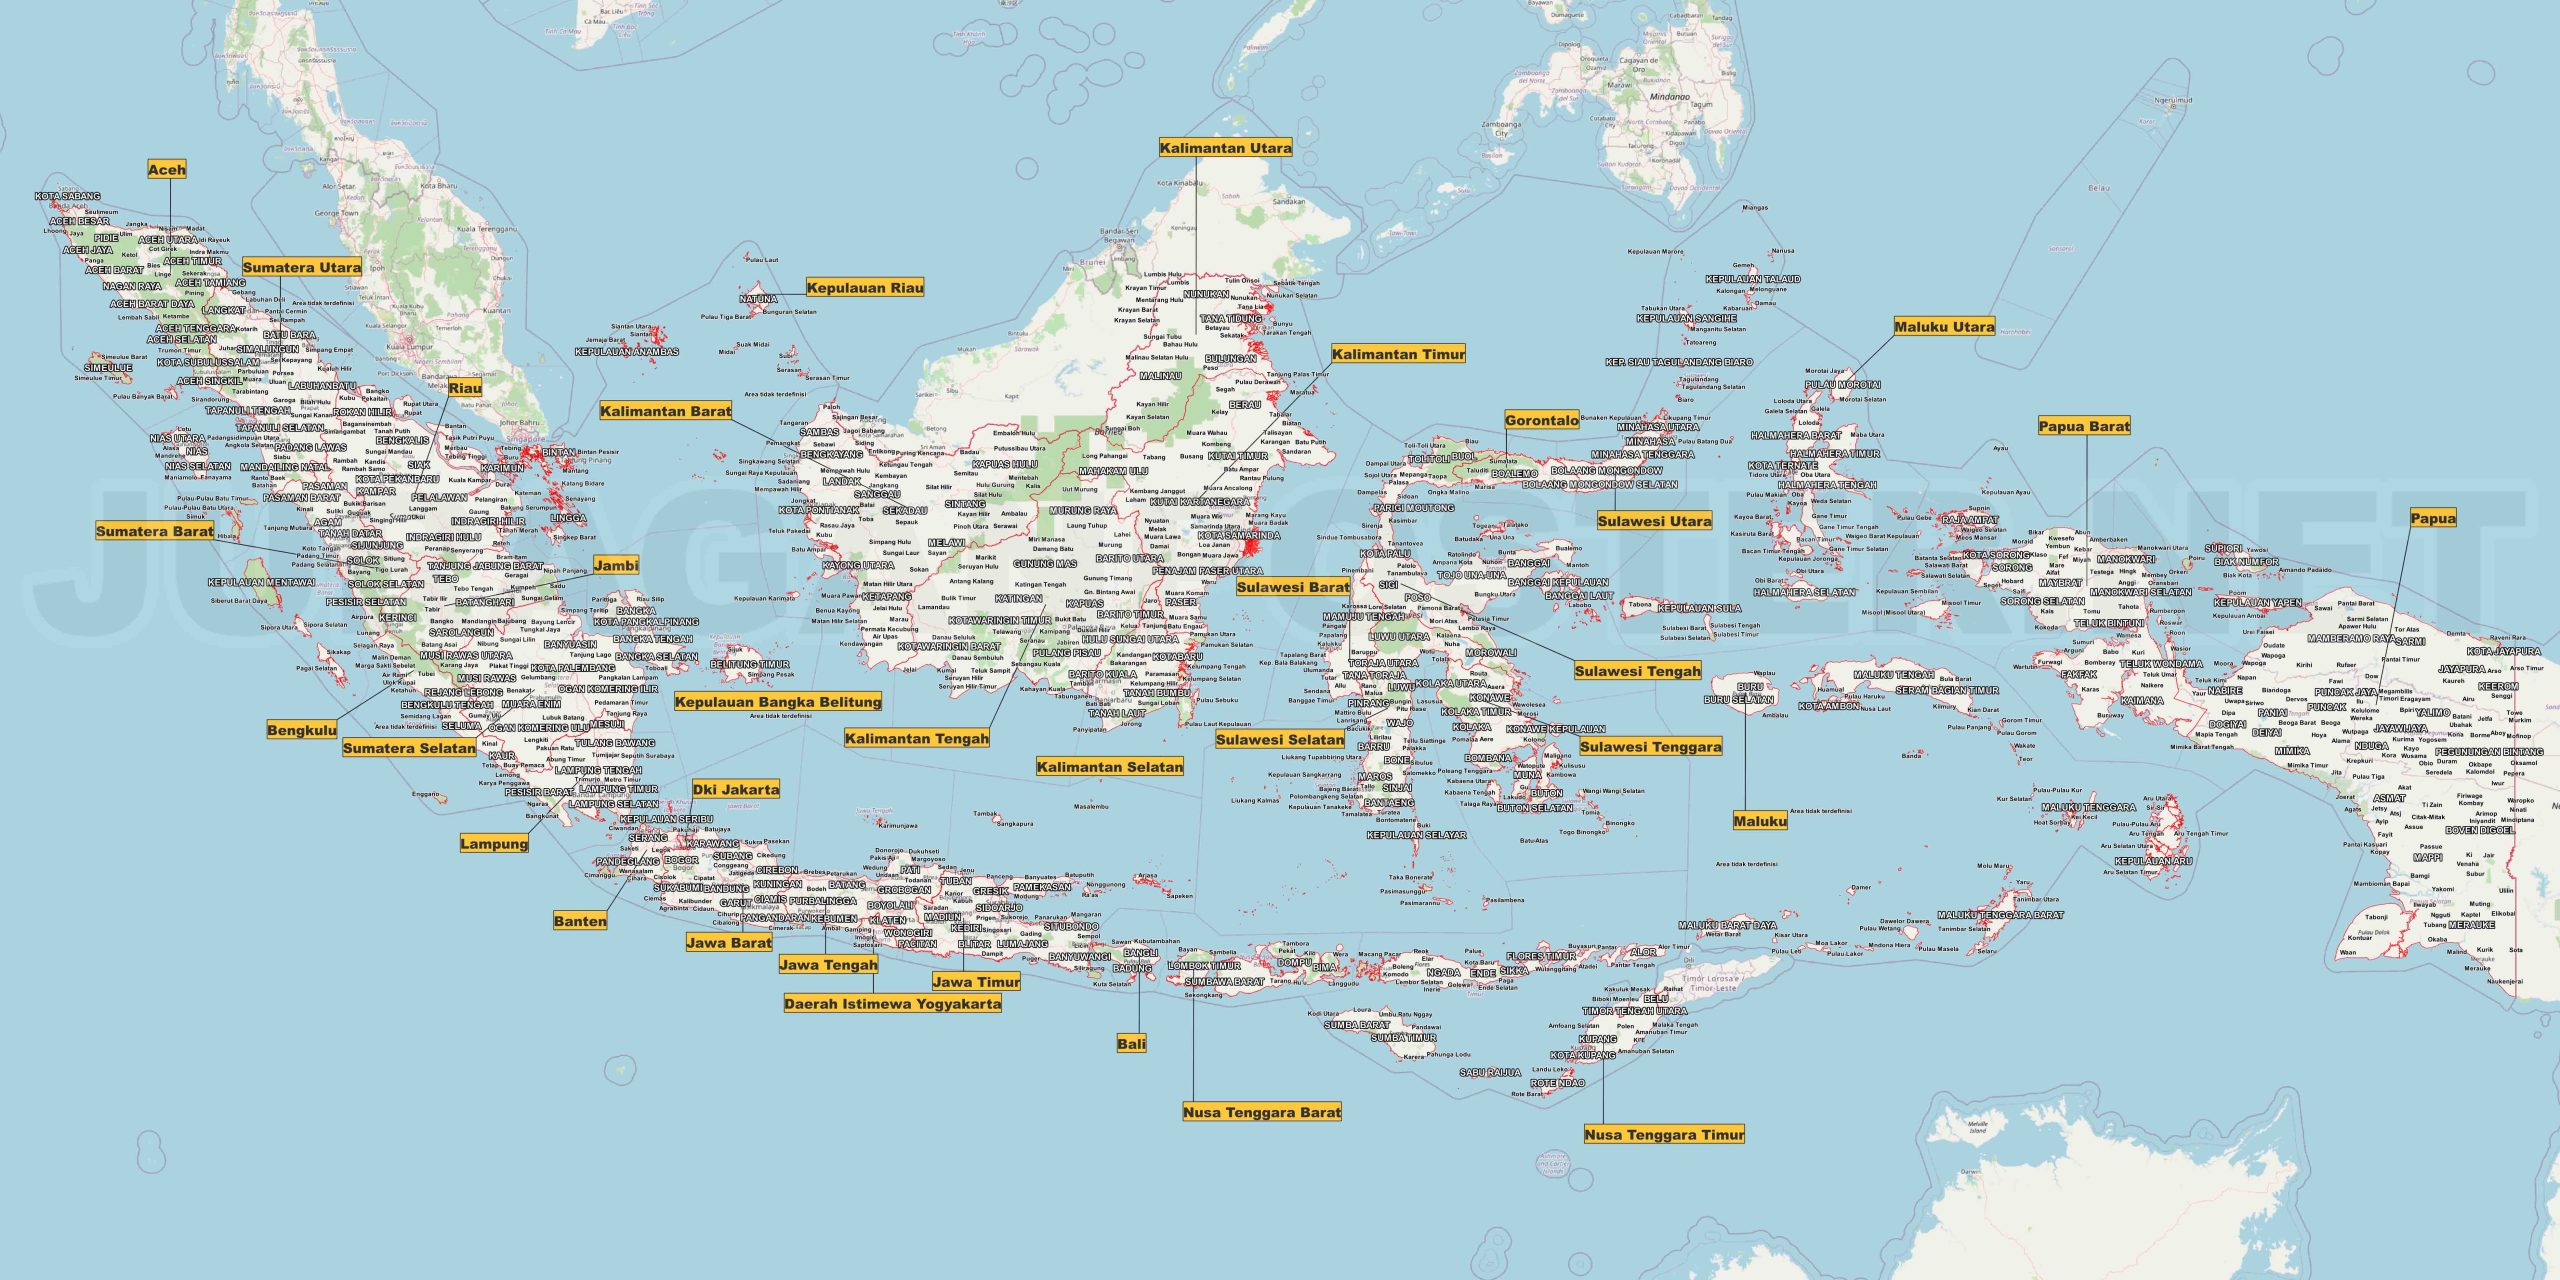 Kartun Peta Indonesia: Menyajikan Data dengan Gaya yang Menghibur